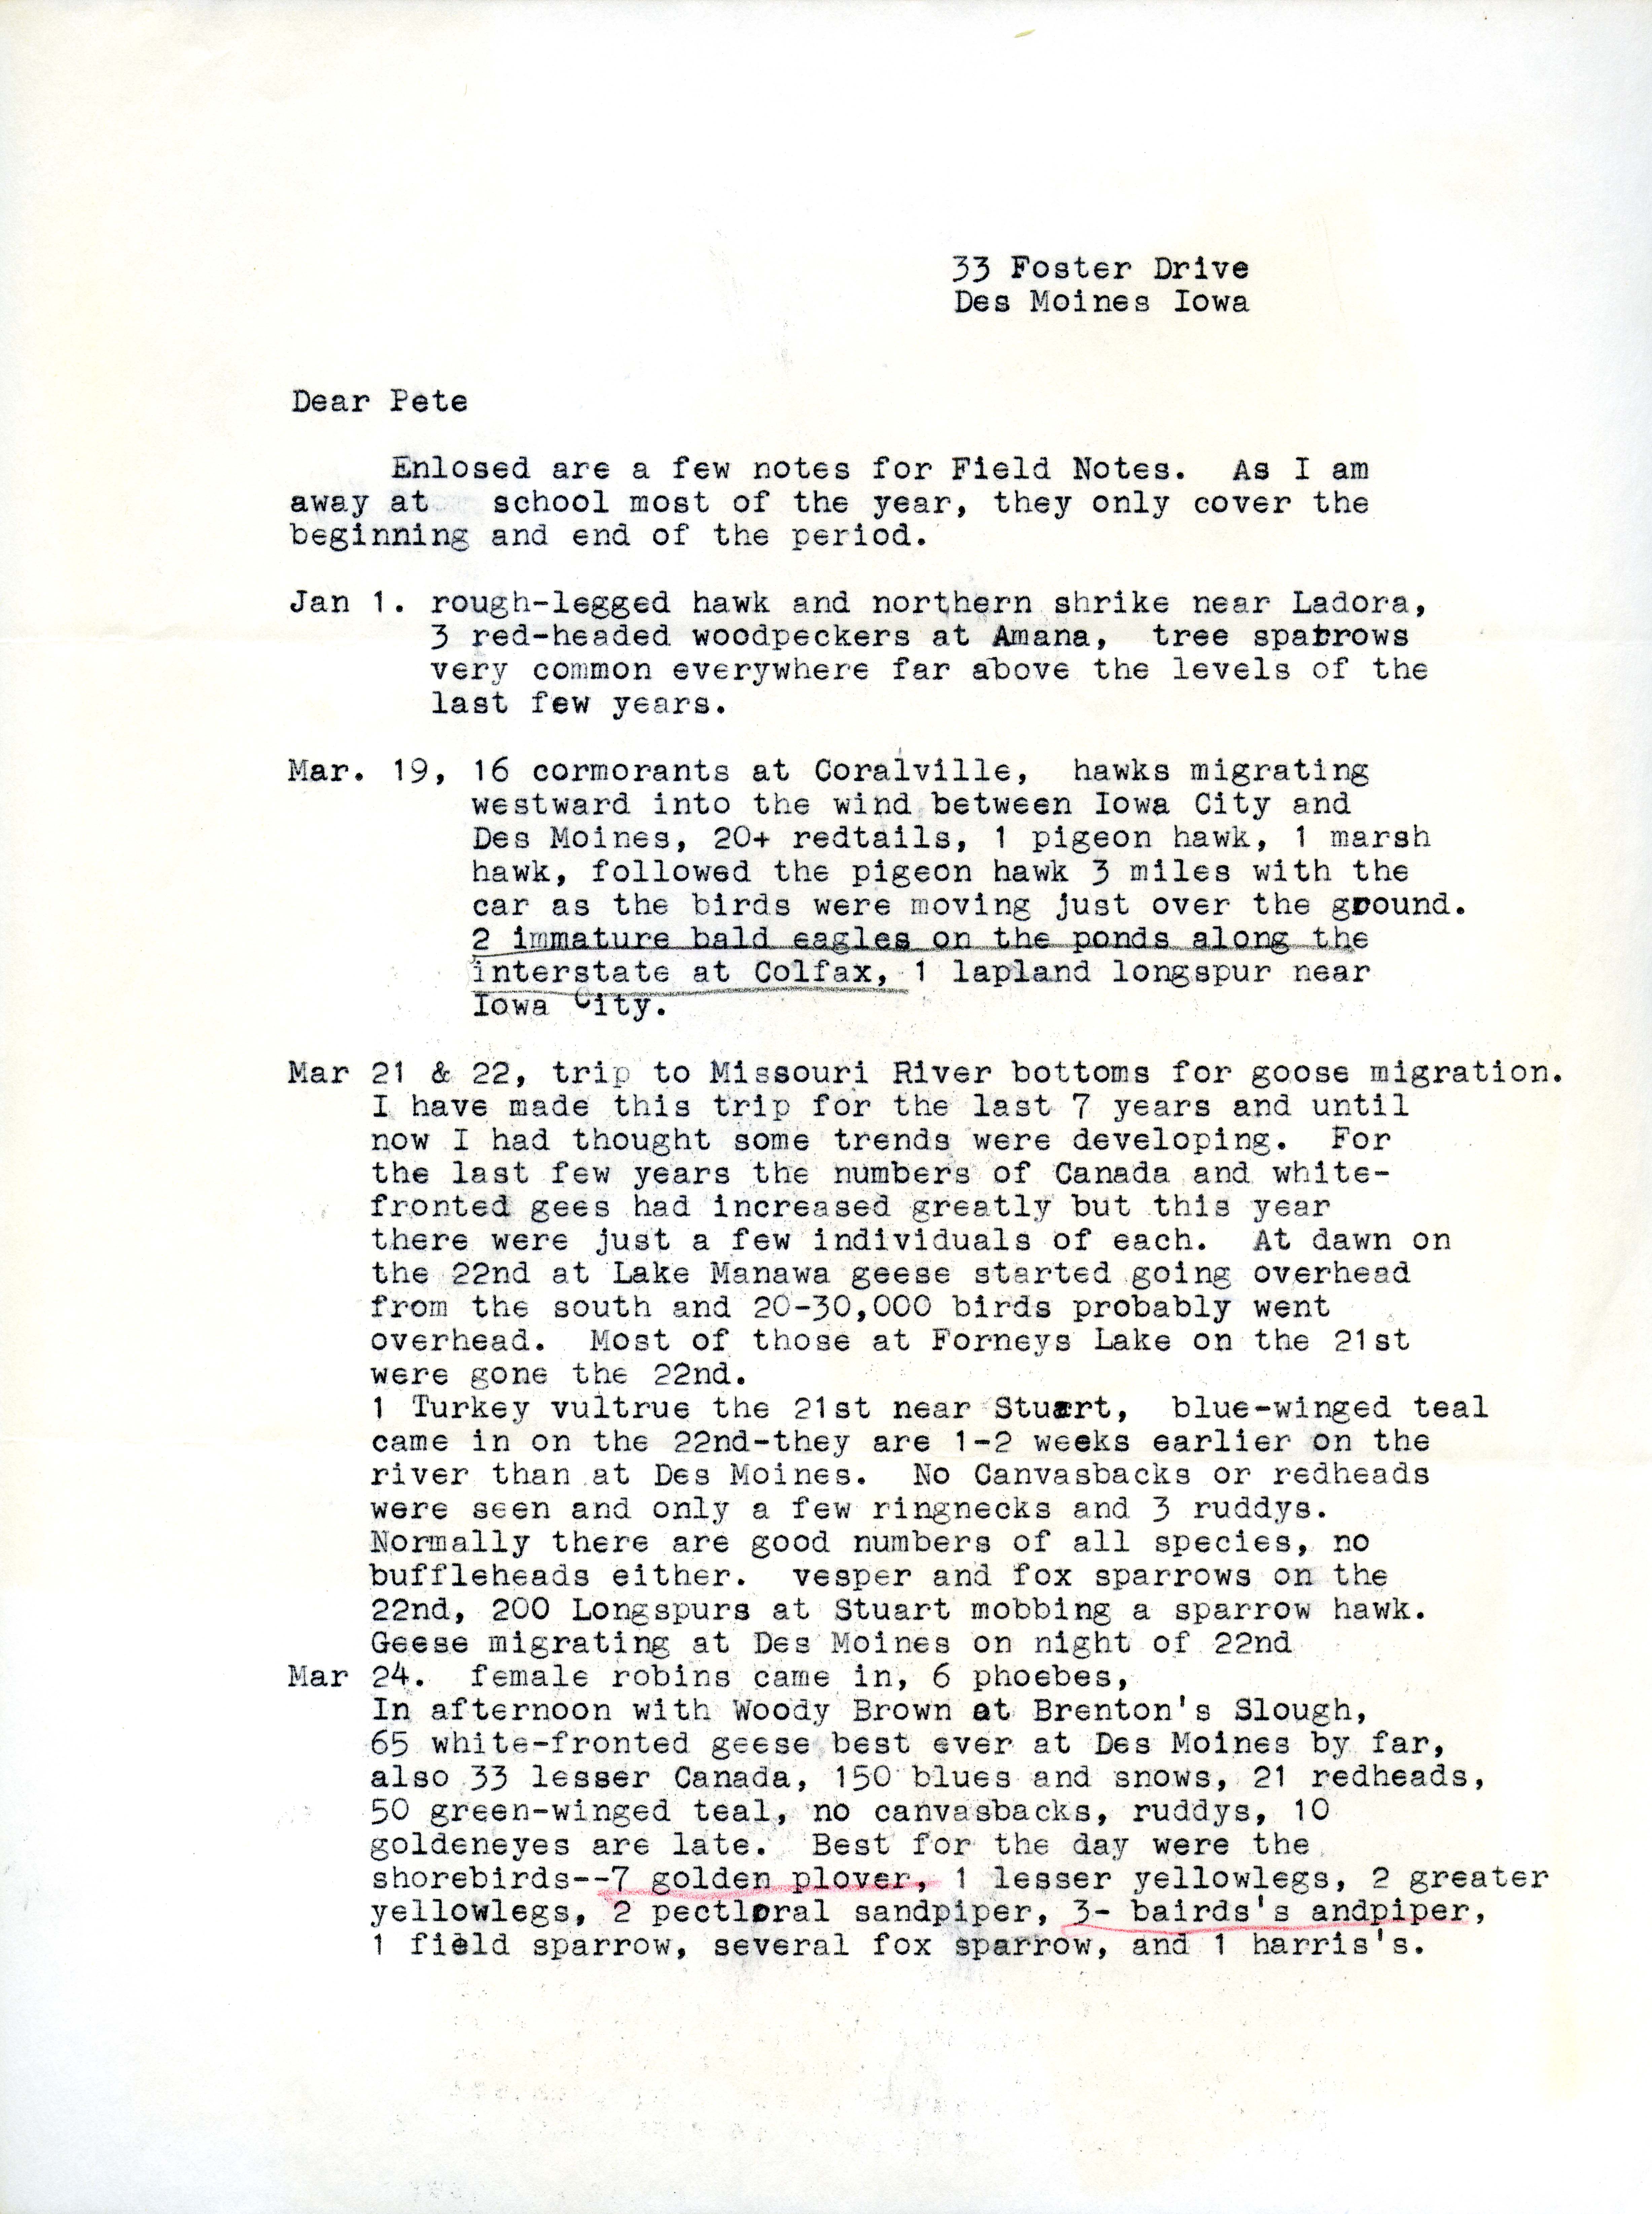 Joe Kennedy letter to Peter C. Petersen regarding field notes, winter 1963 